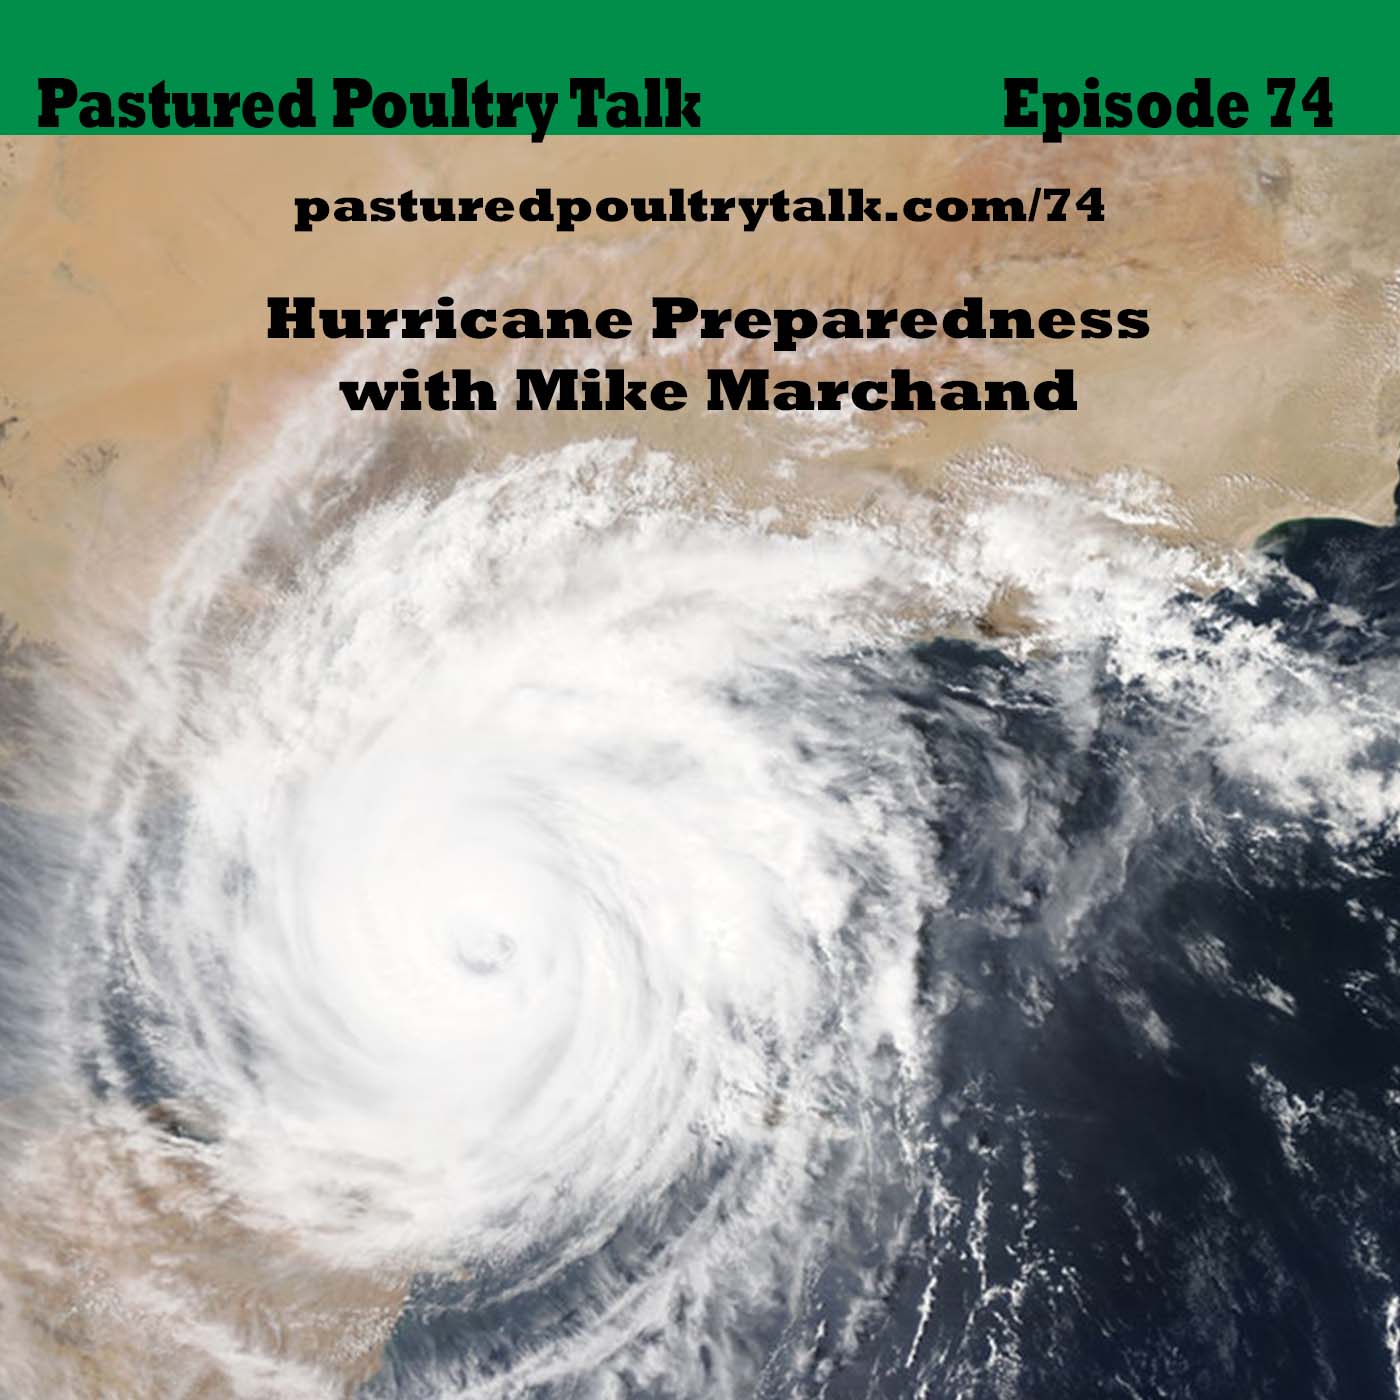 image for pPT 074: hurricane preparedness on farm